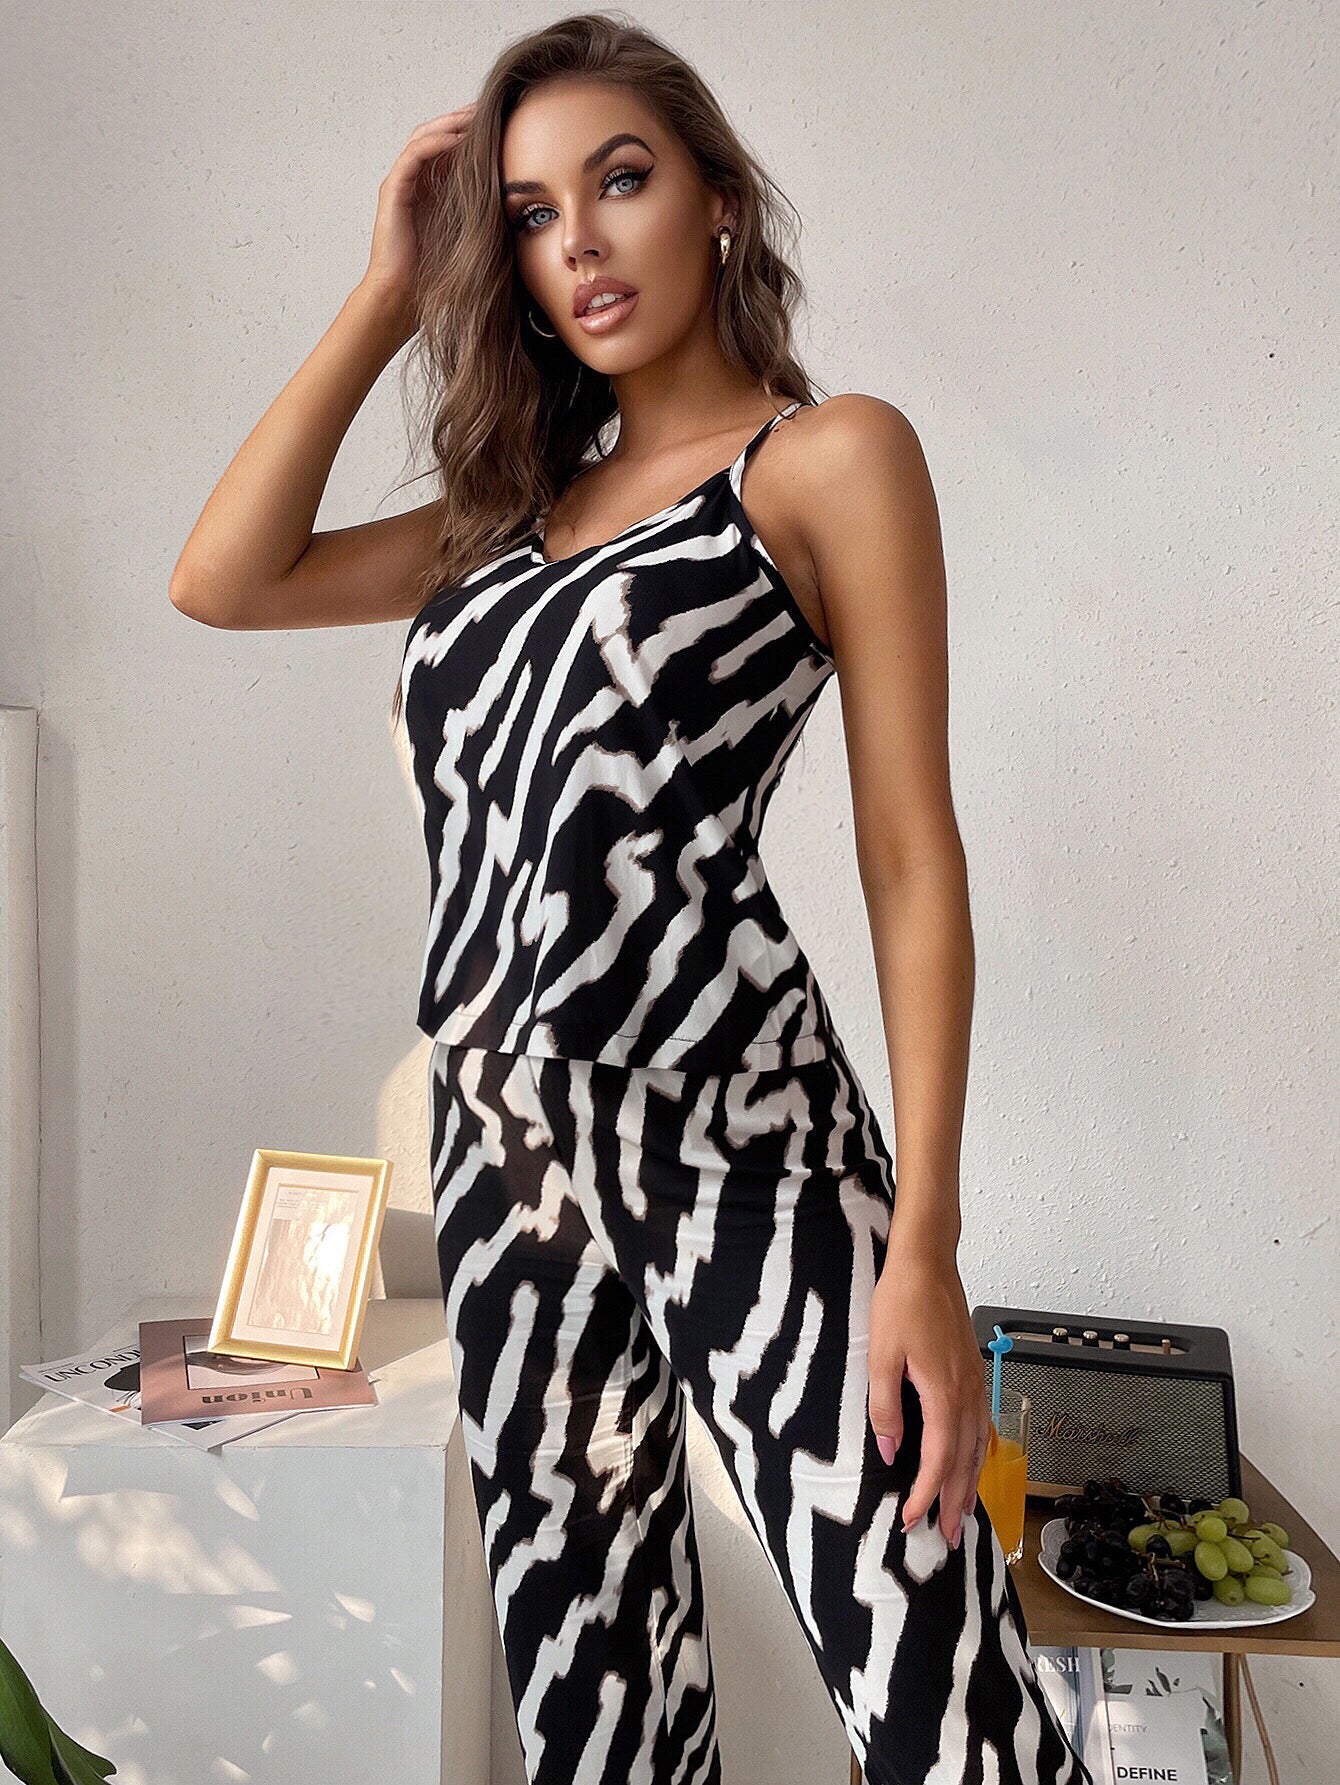 Women's Zebra Print Cami with Pants Sleepwear Two Piece Pajama Set Sai Feel